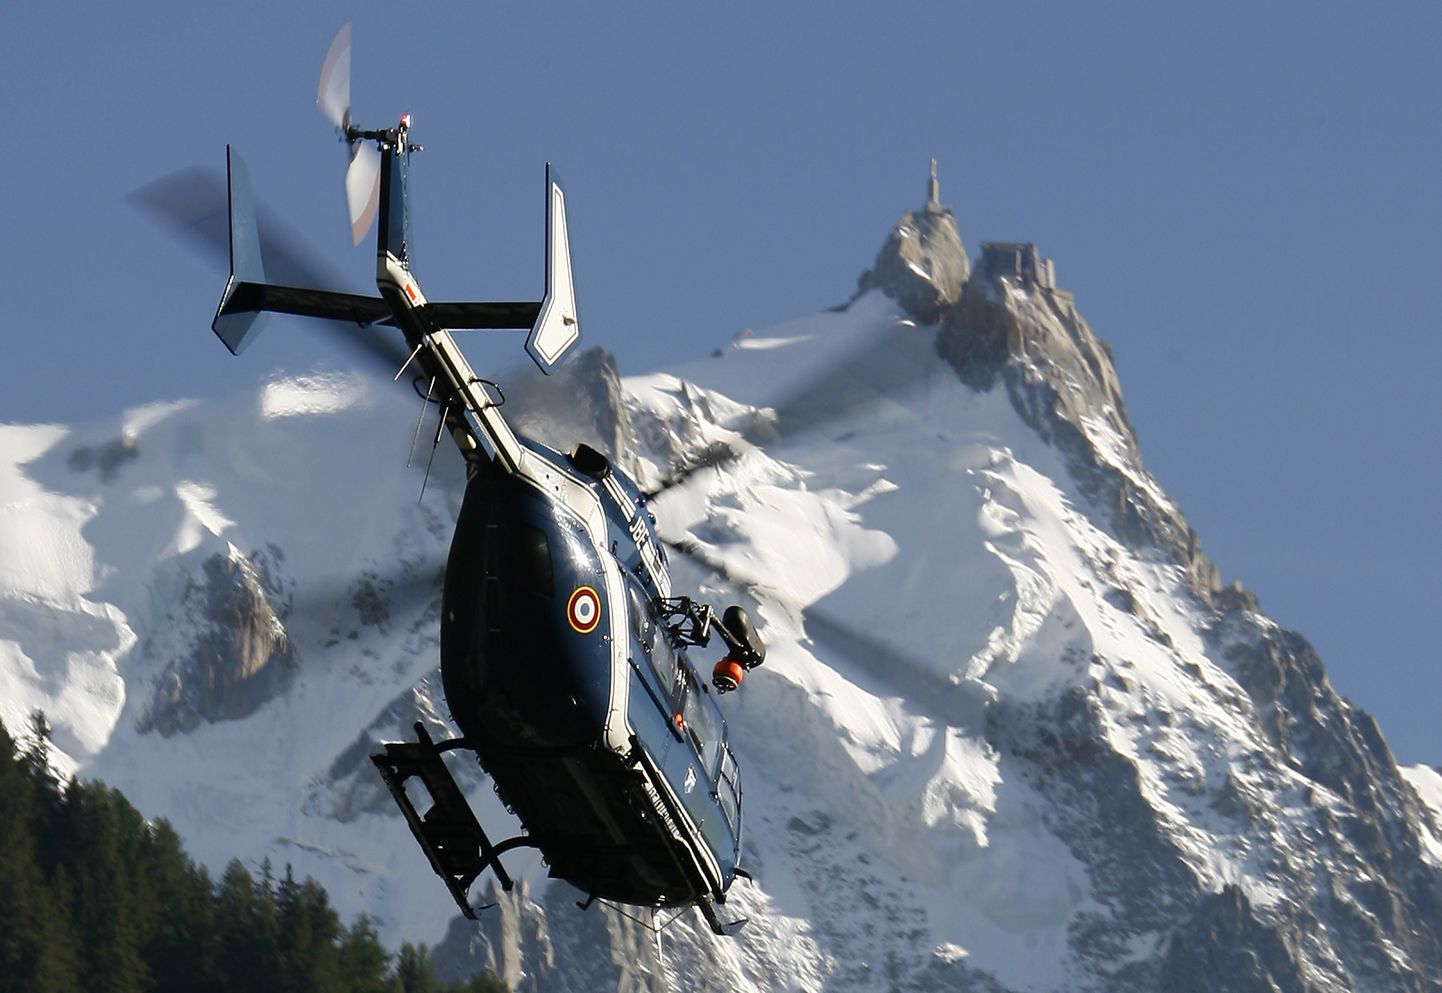 Prantsuse politsei päästehelikopter ja Euroopa kõrgeim mägi Mont Blanc